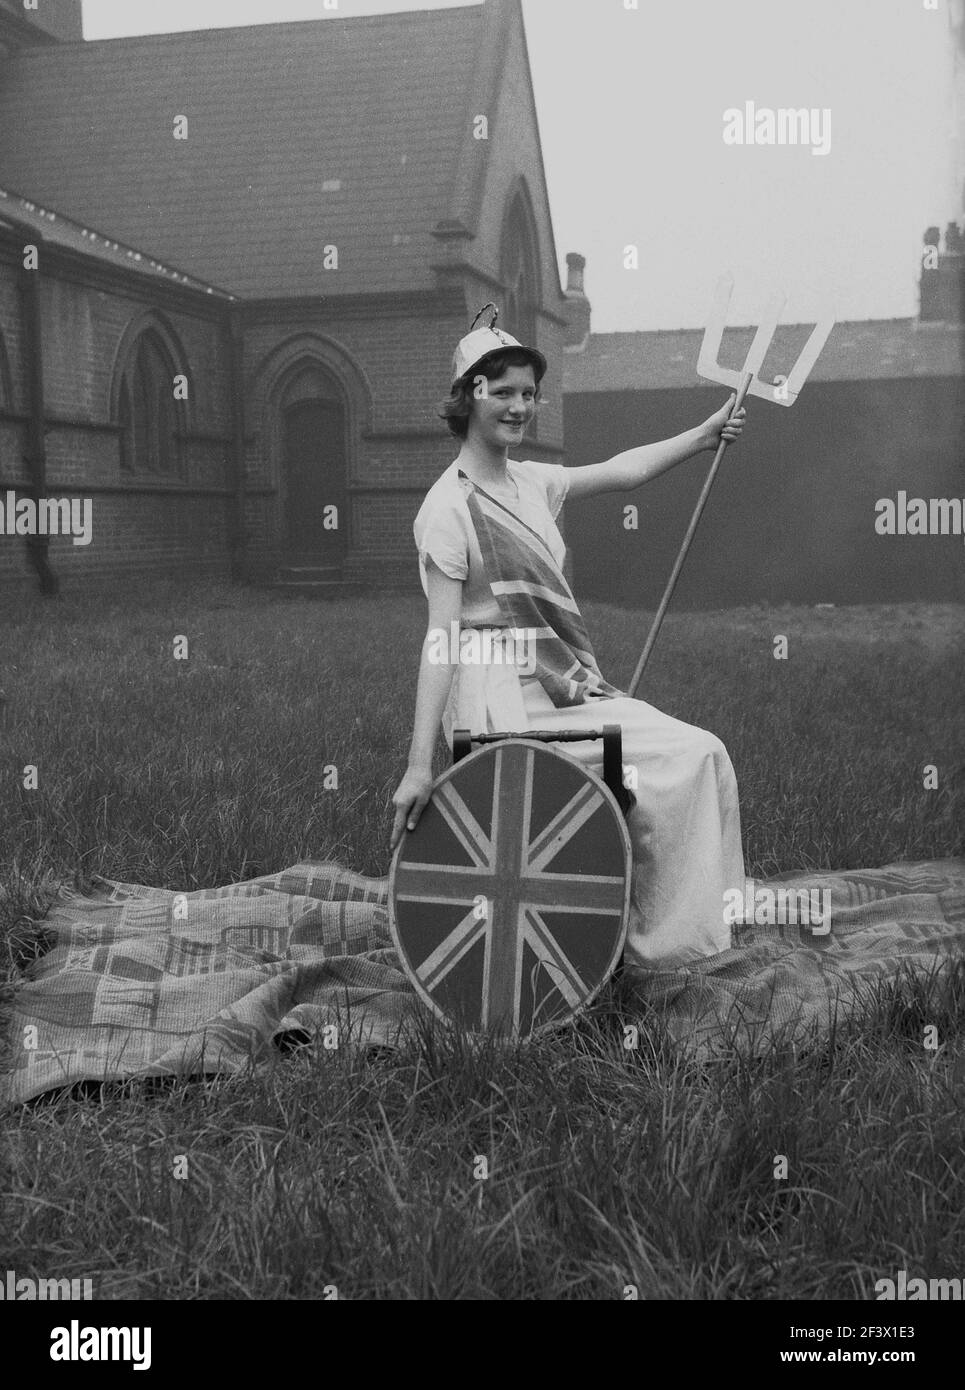 1958, historique, printemps et une adolescente dans son costume de parade, lance assise et bouclier d'Union Jack, posant dans le domaine d'une église pour sa photo, avant de prendre part au traditionnel festival du jour de mai, Leeds, Angleterre, Royaume-Uni. Banque D'Images